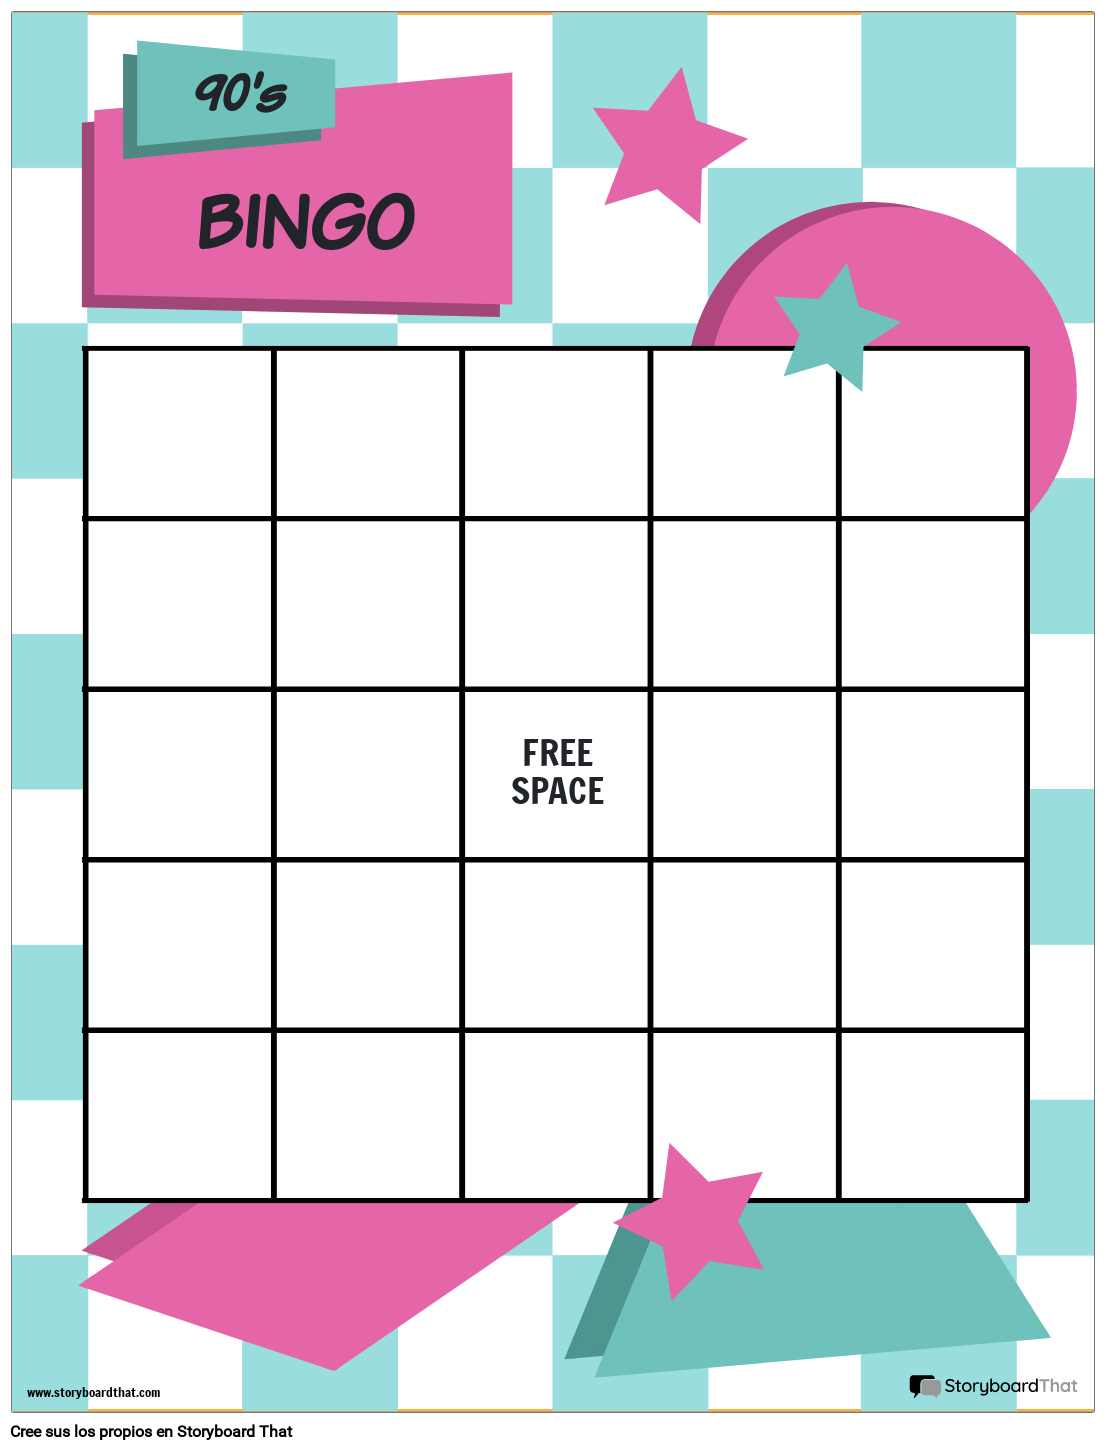 Boletos de Bingo Personalizados y Creativos